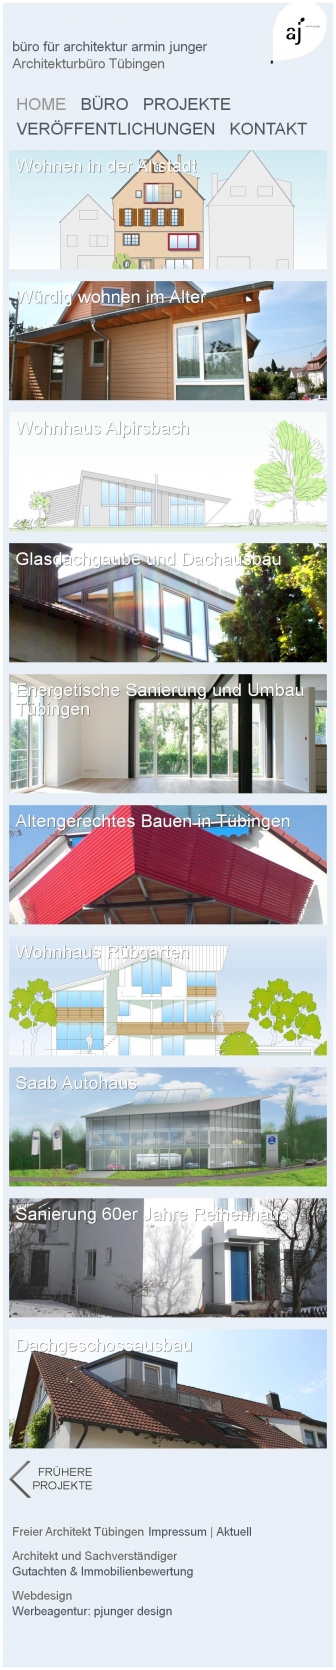 http://architekt-armin-junger.de